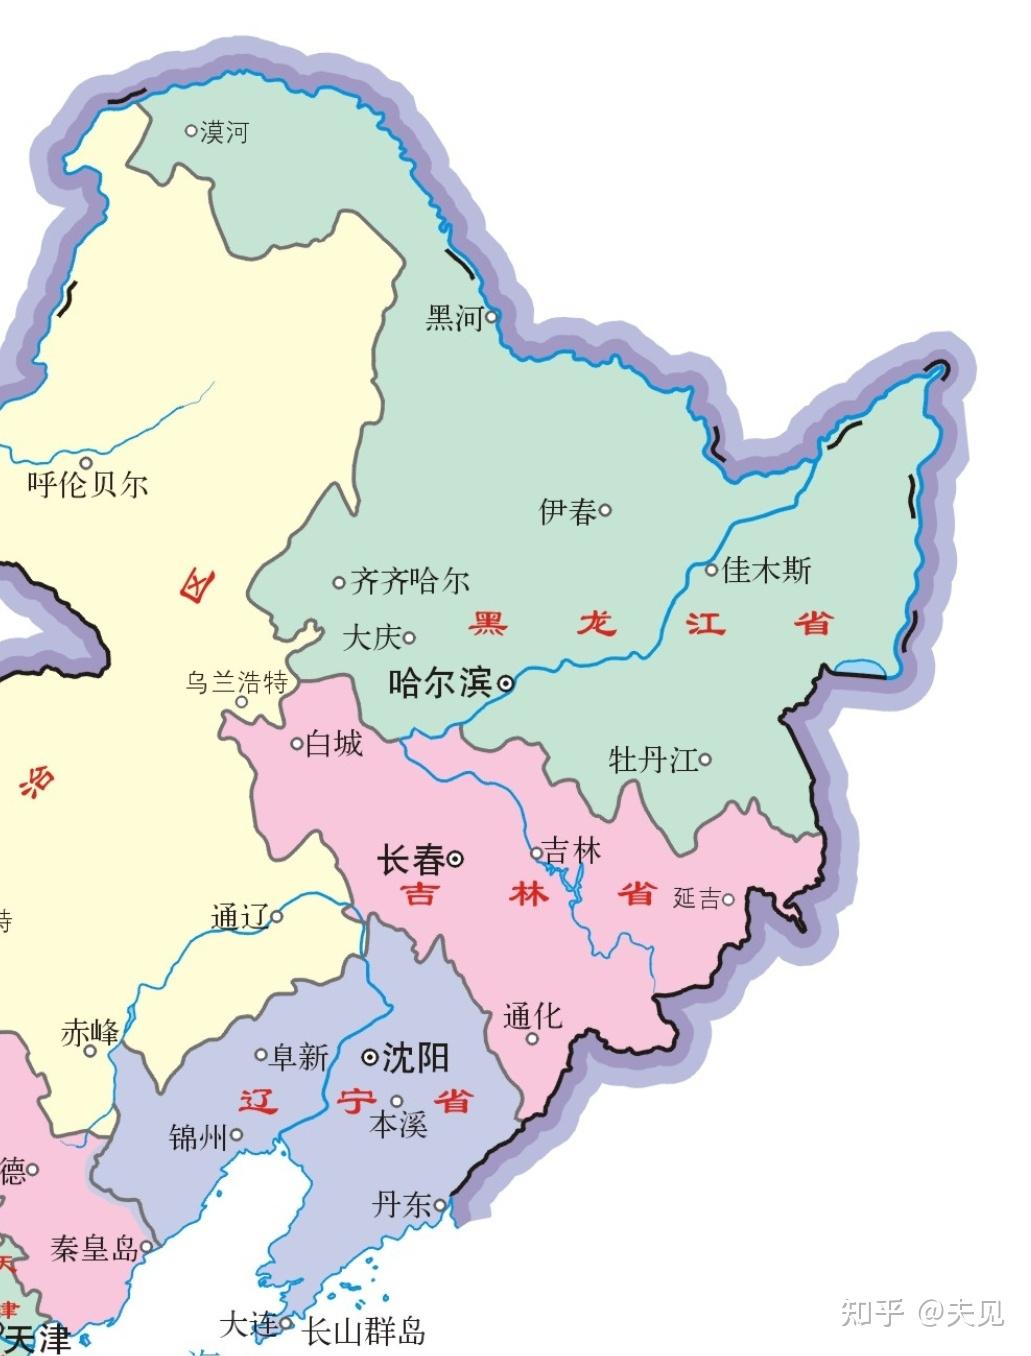 25默写行政区划轮廓图东三省组合图